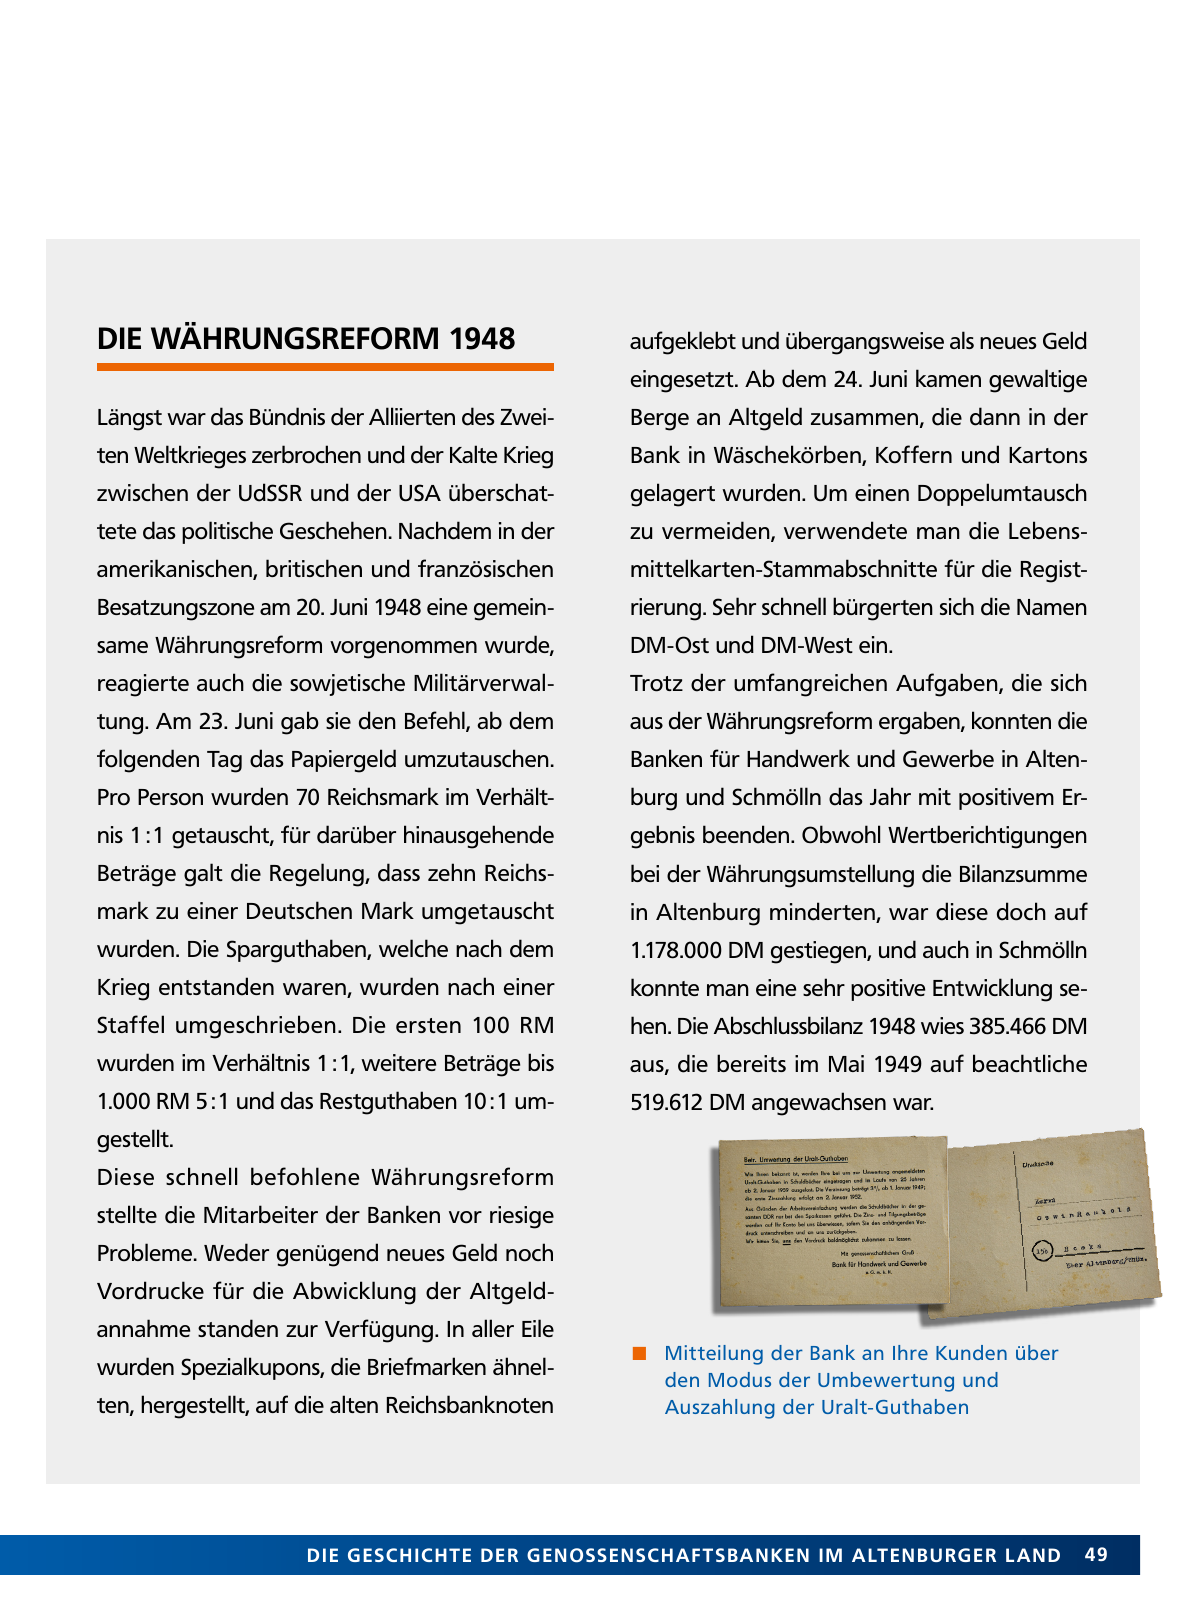 Vorschau Von der Idee, sich selbst zu helfen – 150 Jahre genossenschaftliches Bankwesen im Altenburger Land Seite 49